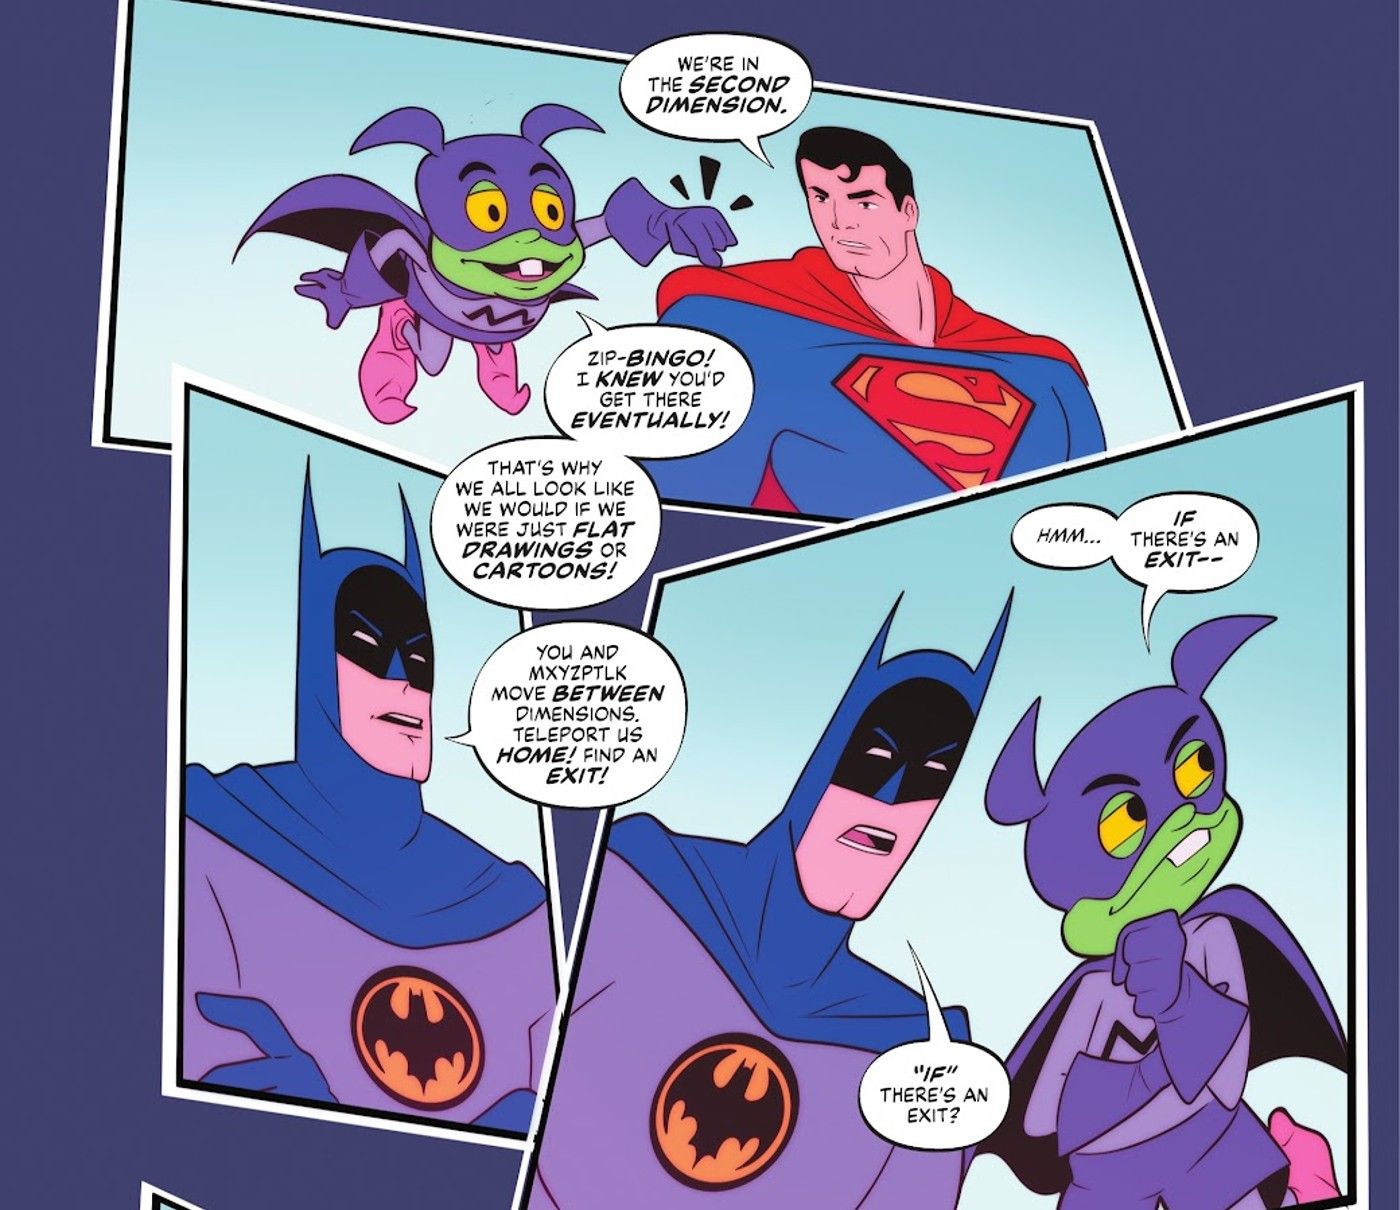 Painéis de quadrinhos: Superman, Batman e Bat-Mite no estilo do desenho animado Super Friends dos anos 70.